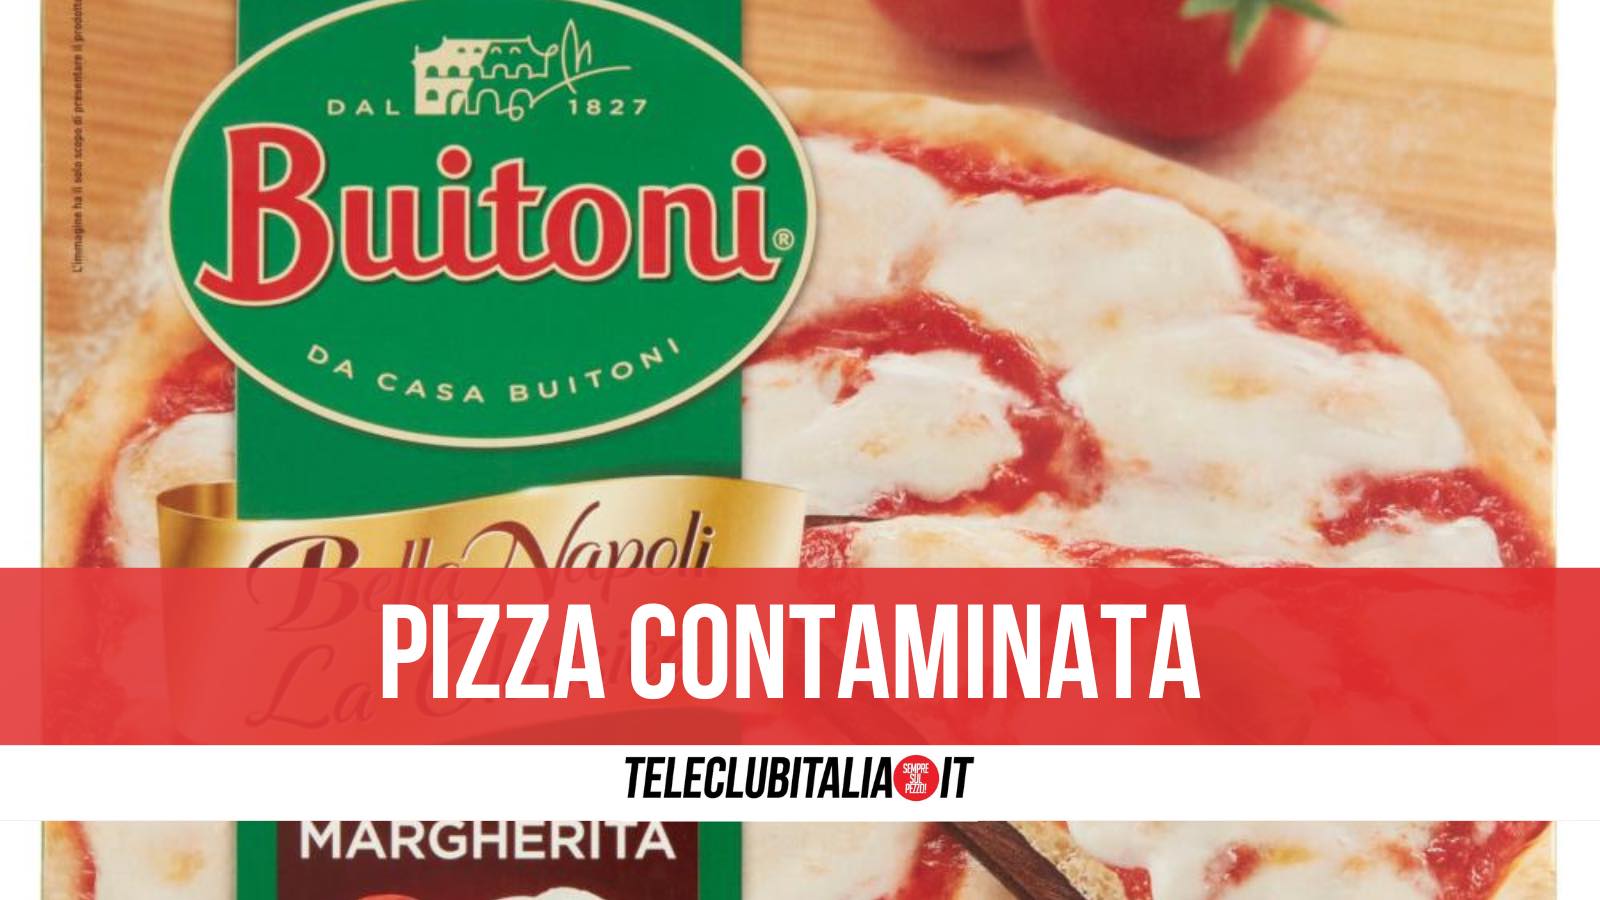 pizza buitoni bella napoli contaminata e.coli